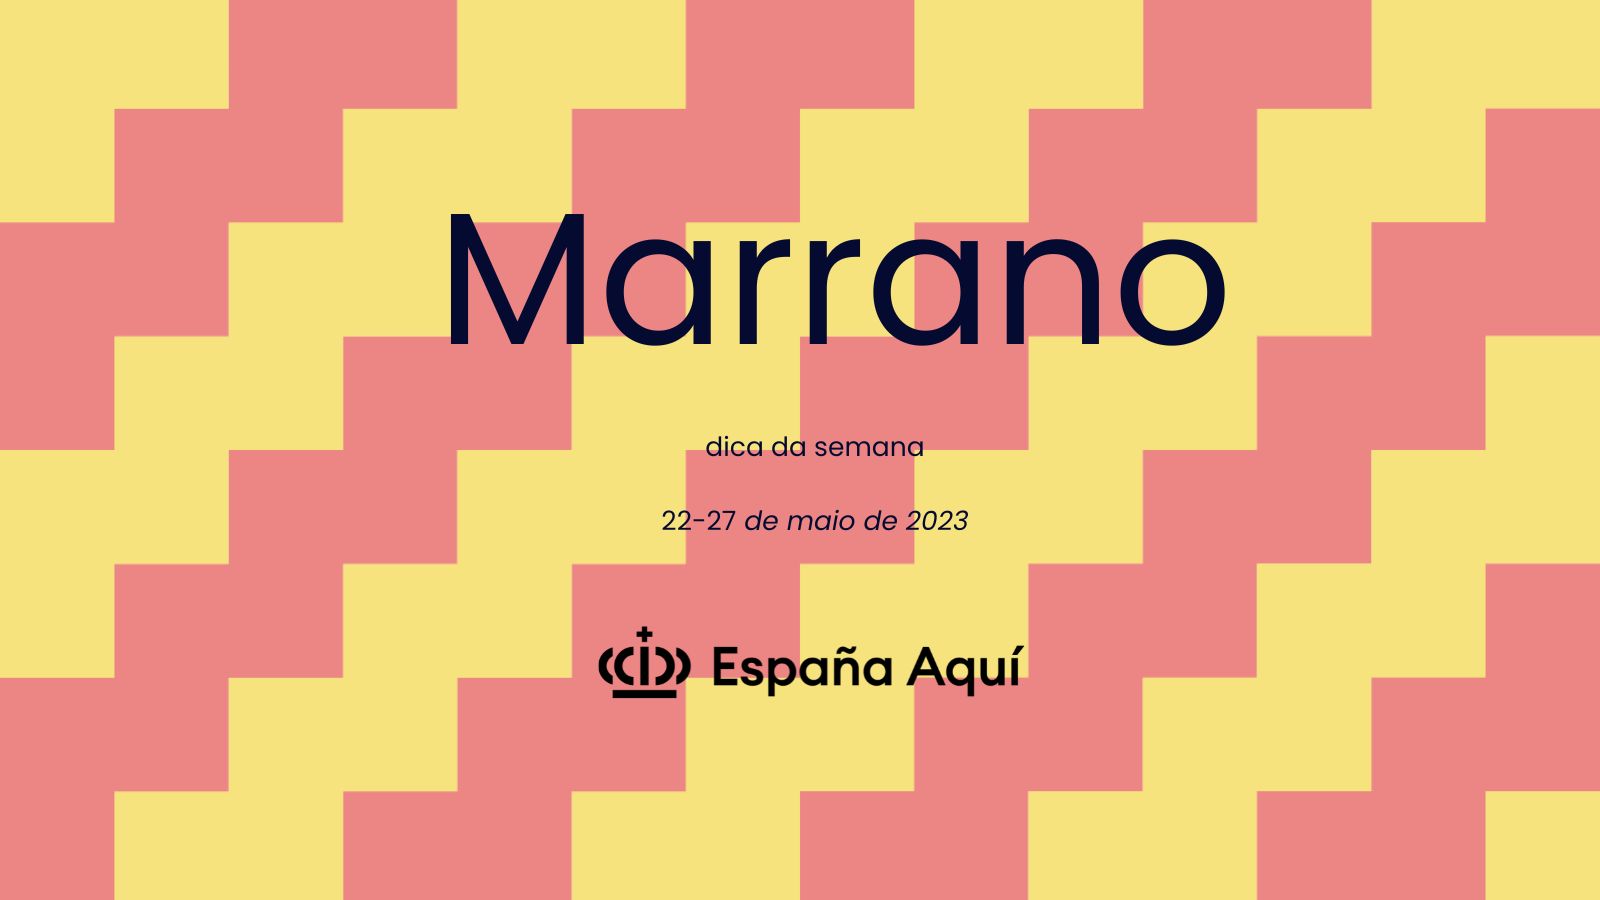 https://www.espanaaqui.com.br/pdf/2023/maio/Dica%20da%20semana.%20Marrano.jpg